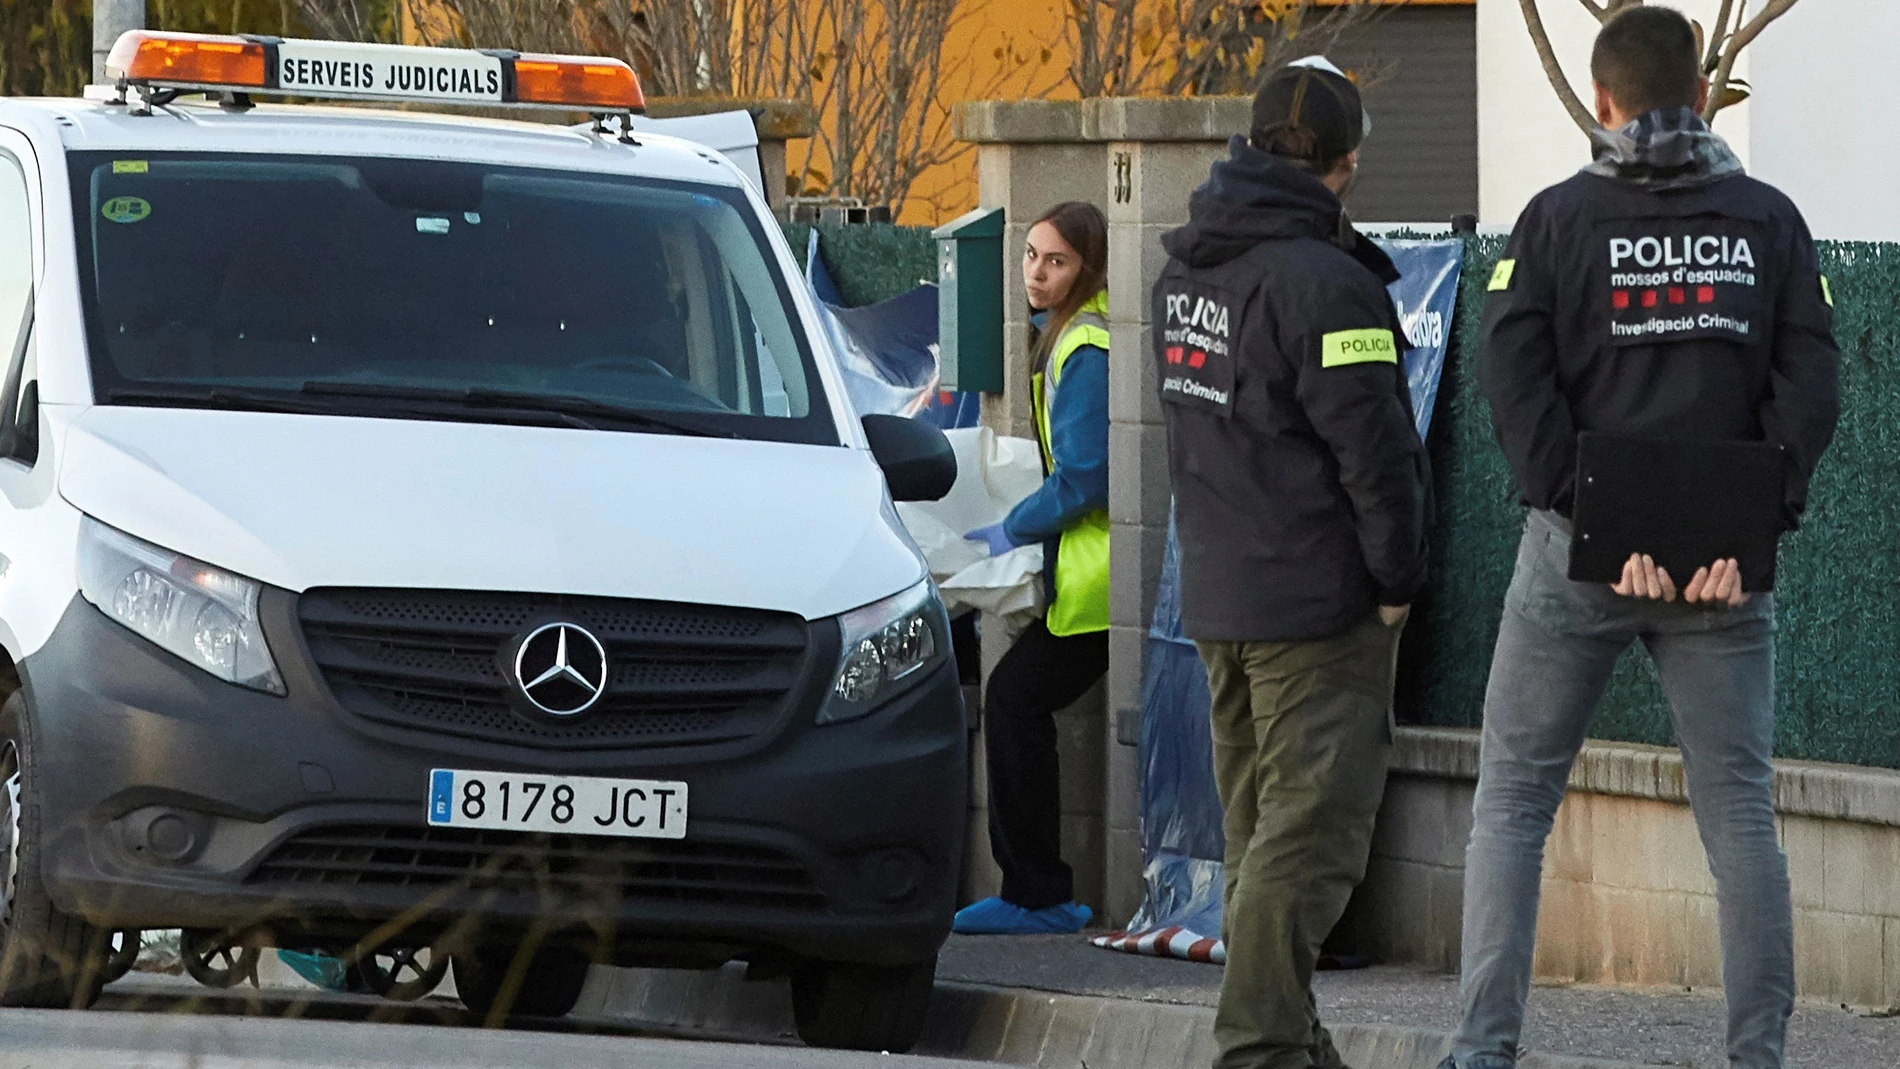 Los Mossos d'Esquadra investigan la muerte violenta de dos niñas, de 5 y 6 años de edad, en su domicilio de Vilobí d'Onyar (Girona), presuntamente a manos de su madre, que posteriormente ha intentado suicidarse arrojándose contra un camión y ahora permanece en estado crítico. EFE/David Borrat.